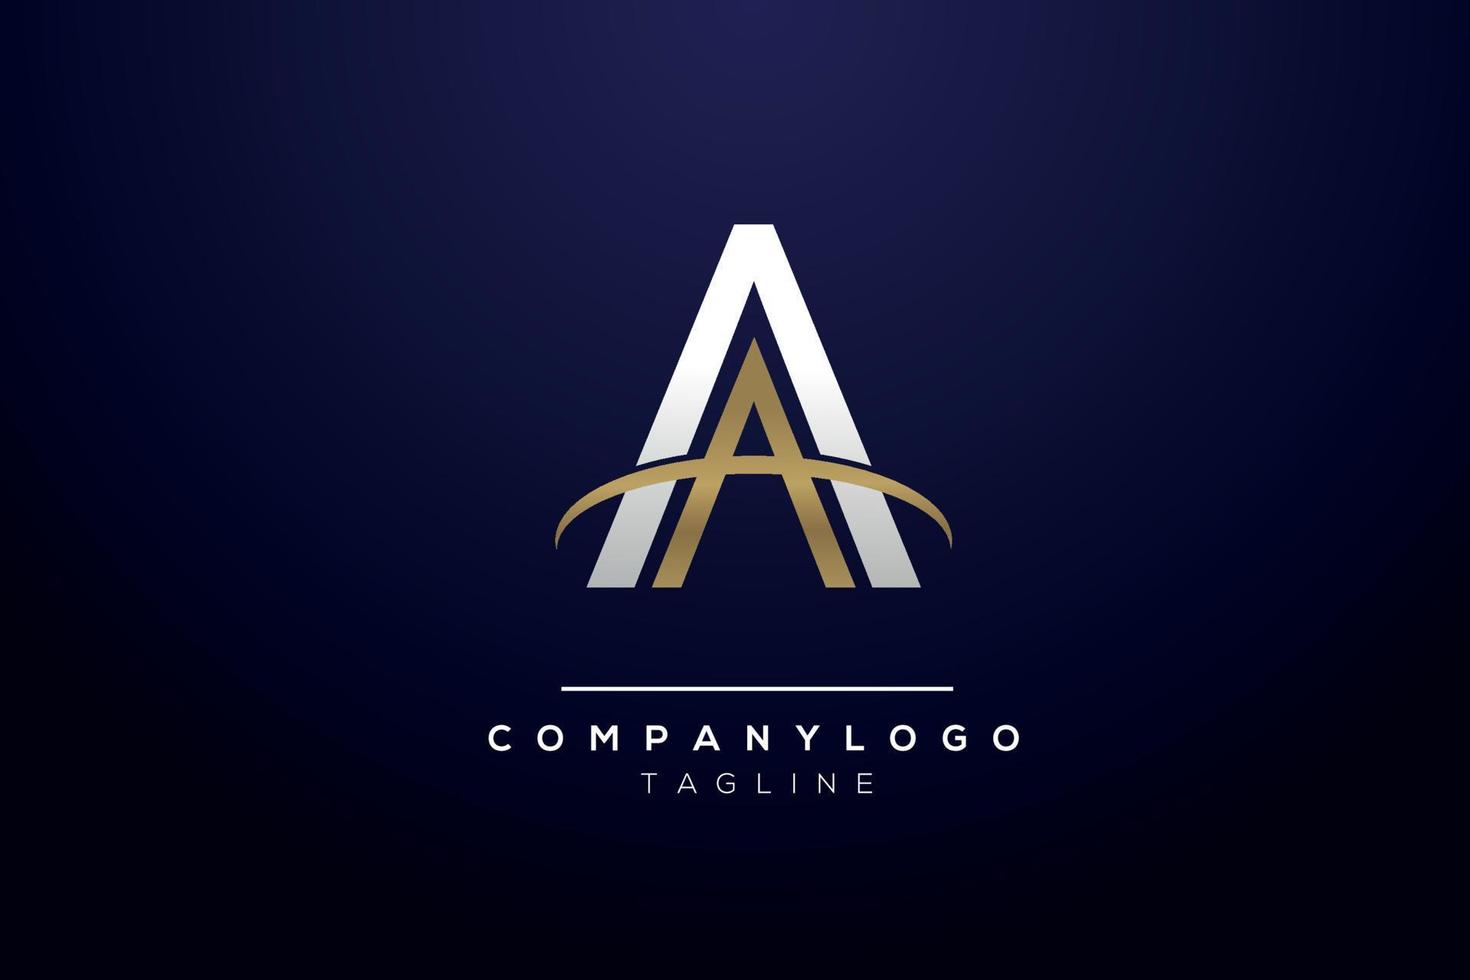 aa monogramma quest'ultimo logo design iniziale per attività commerciale con creativo concetto professionista vettore